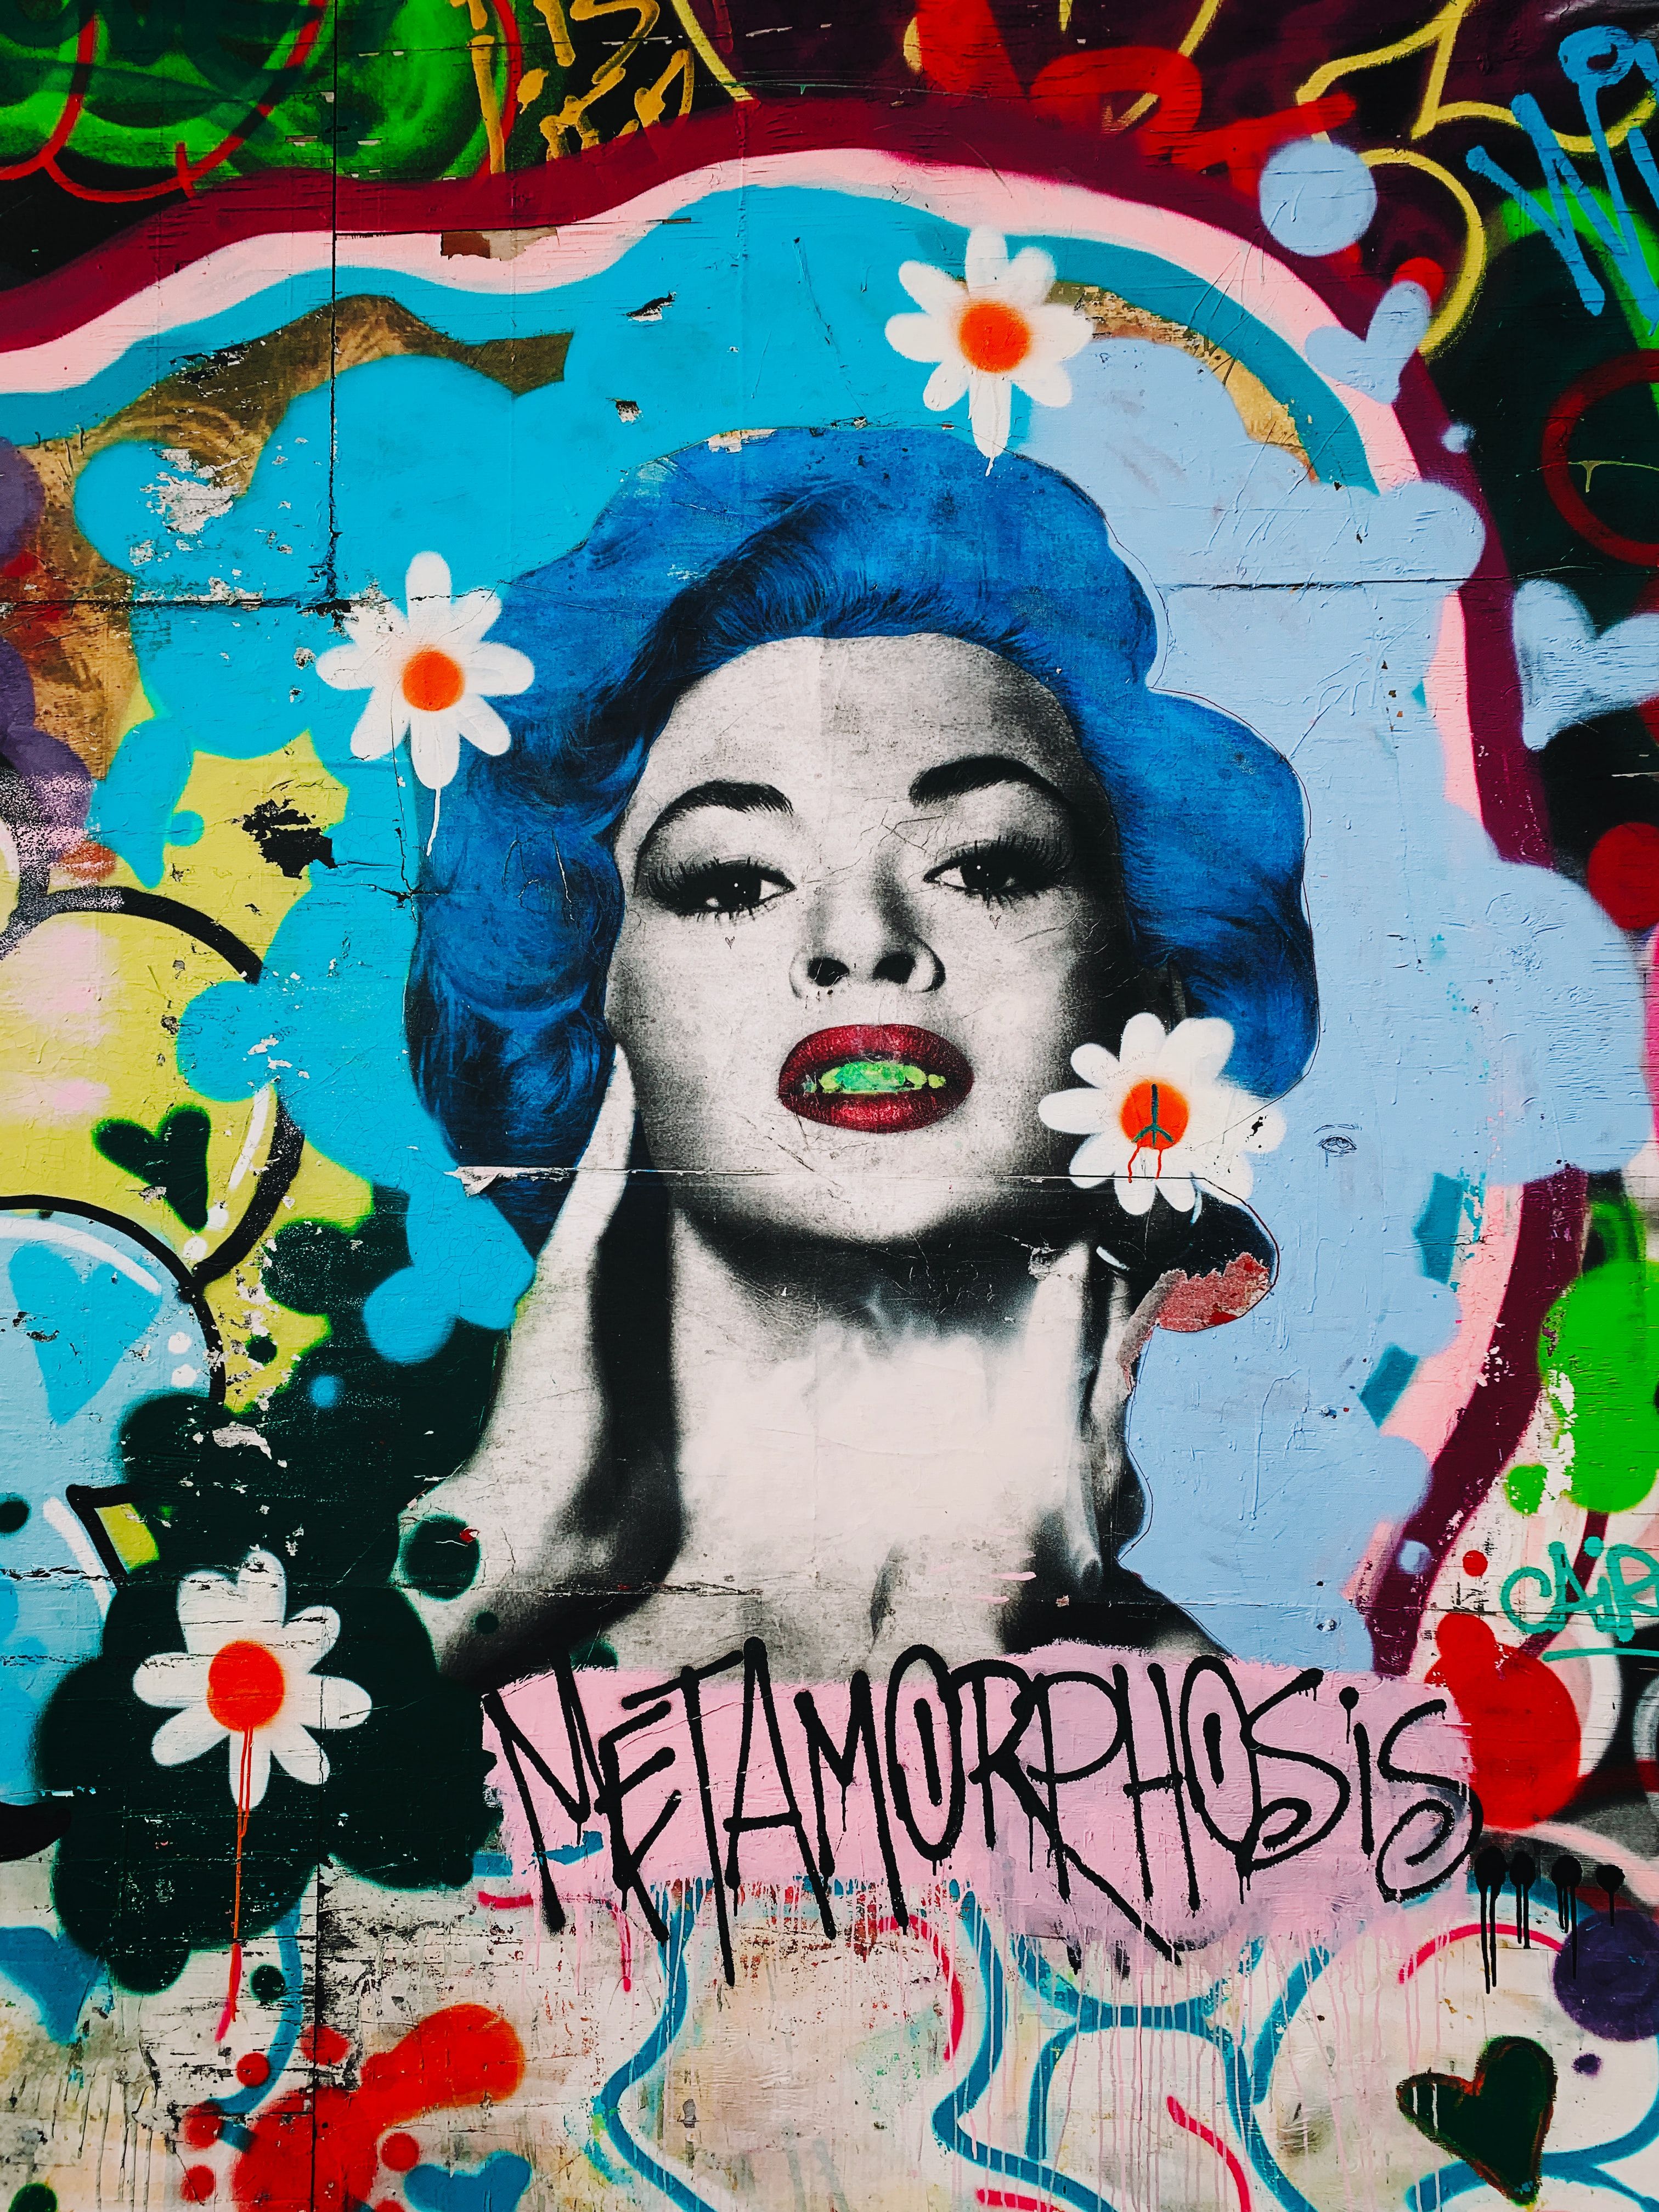 Metamorphosis graffiti wallpaper photo